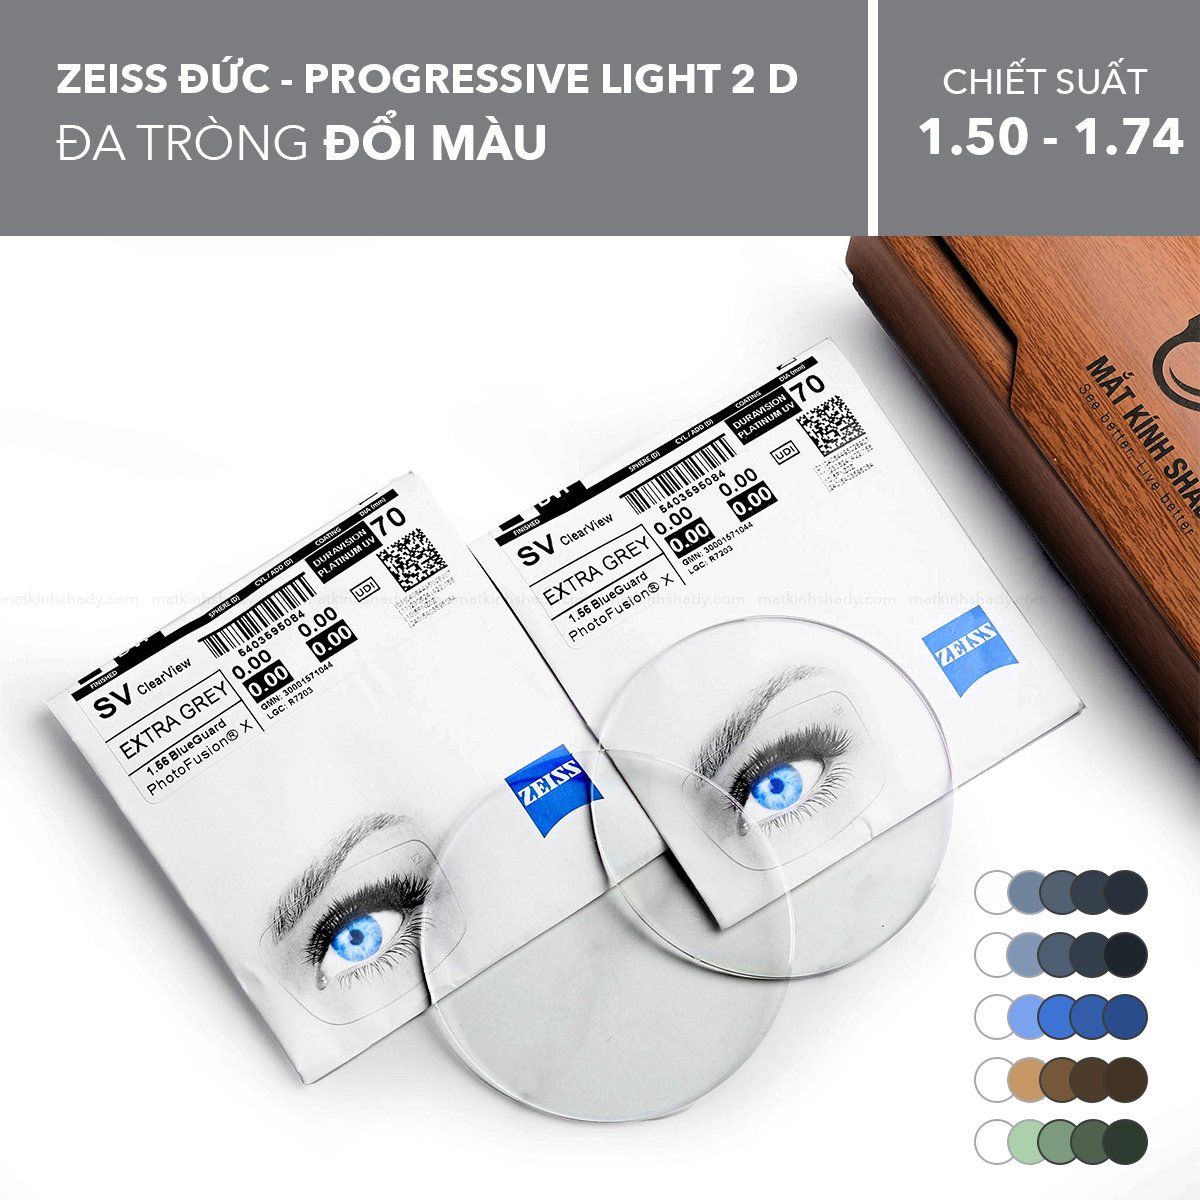  Đa tròng Đổi Màu ZEISS Light 2 D PhotoFusion X 